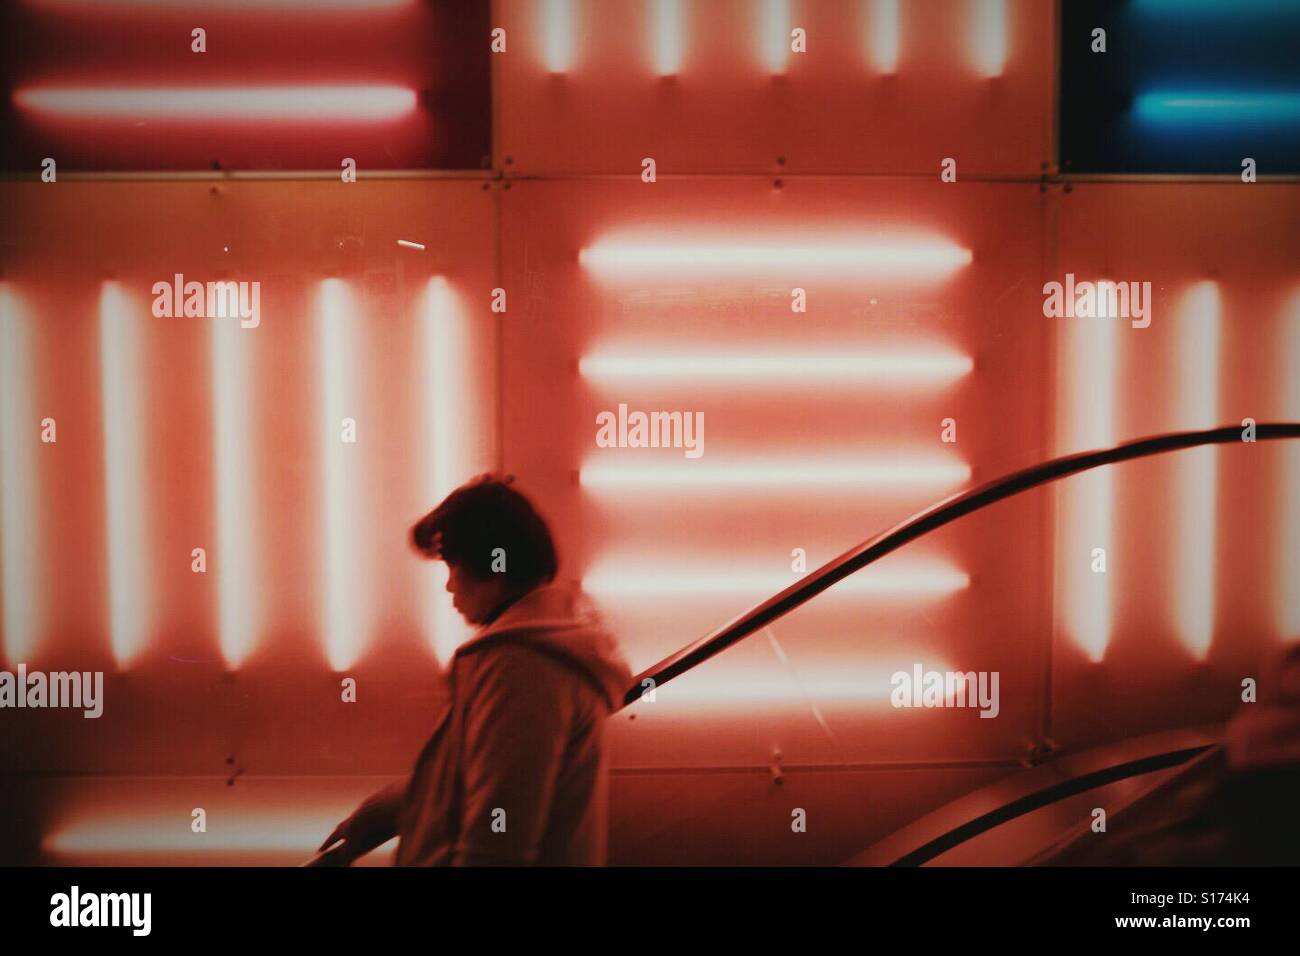 La donna in sella ad una scala mobile nella parte anteriore del rosso luci al neon Foto Stock